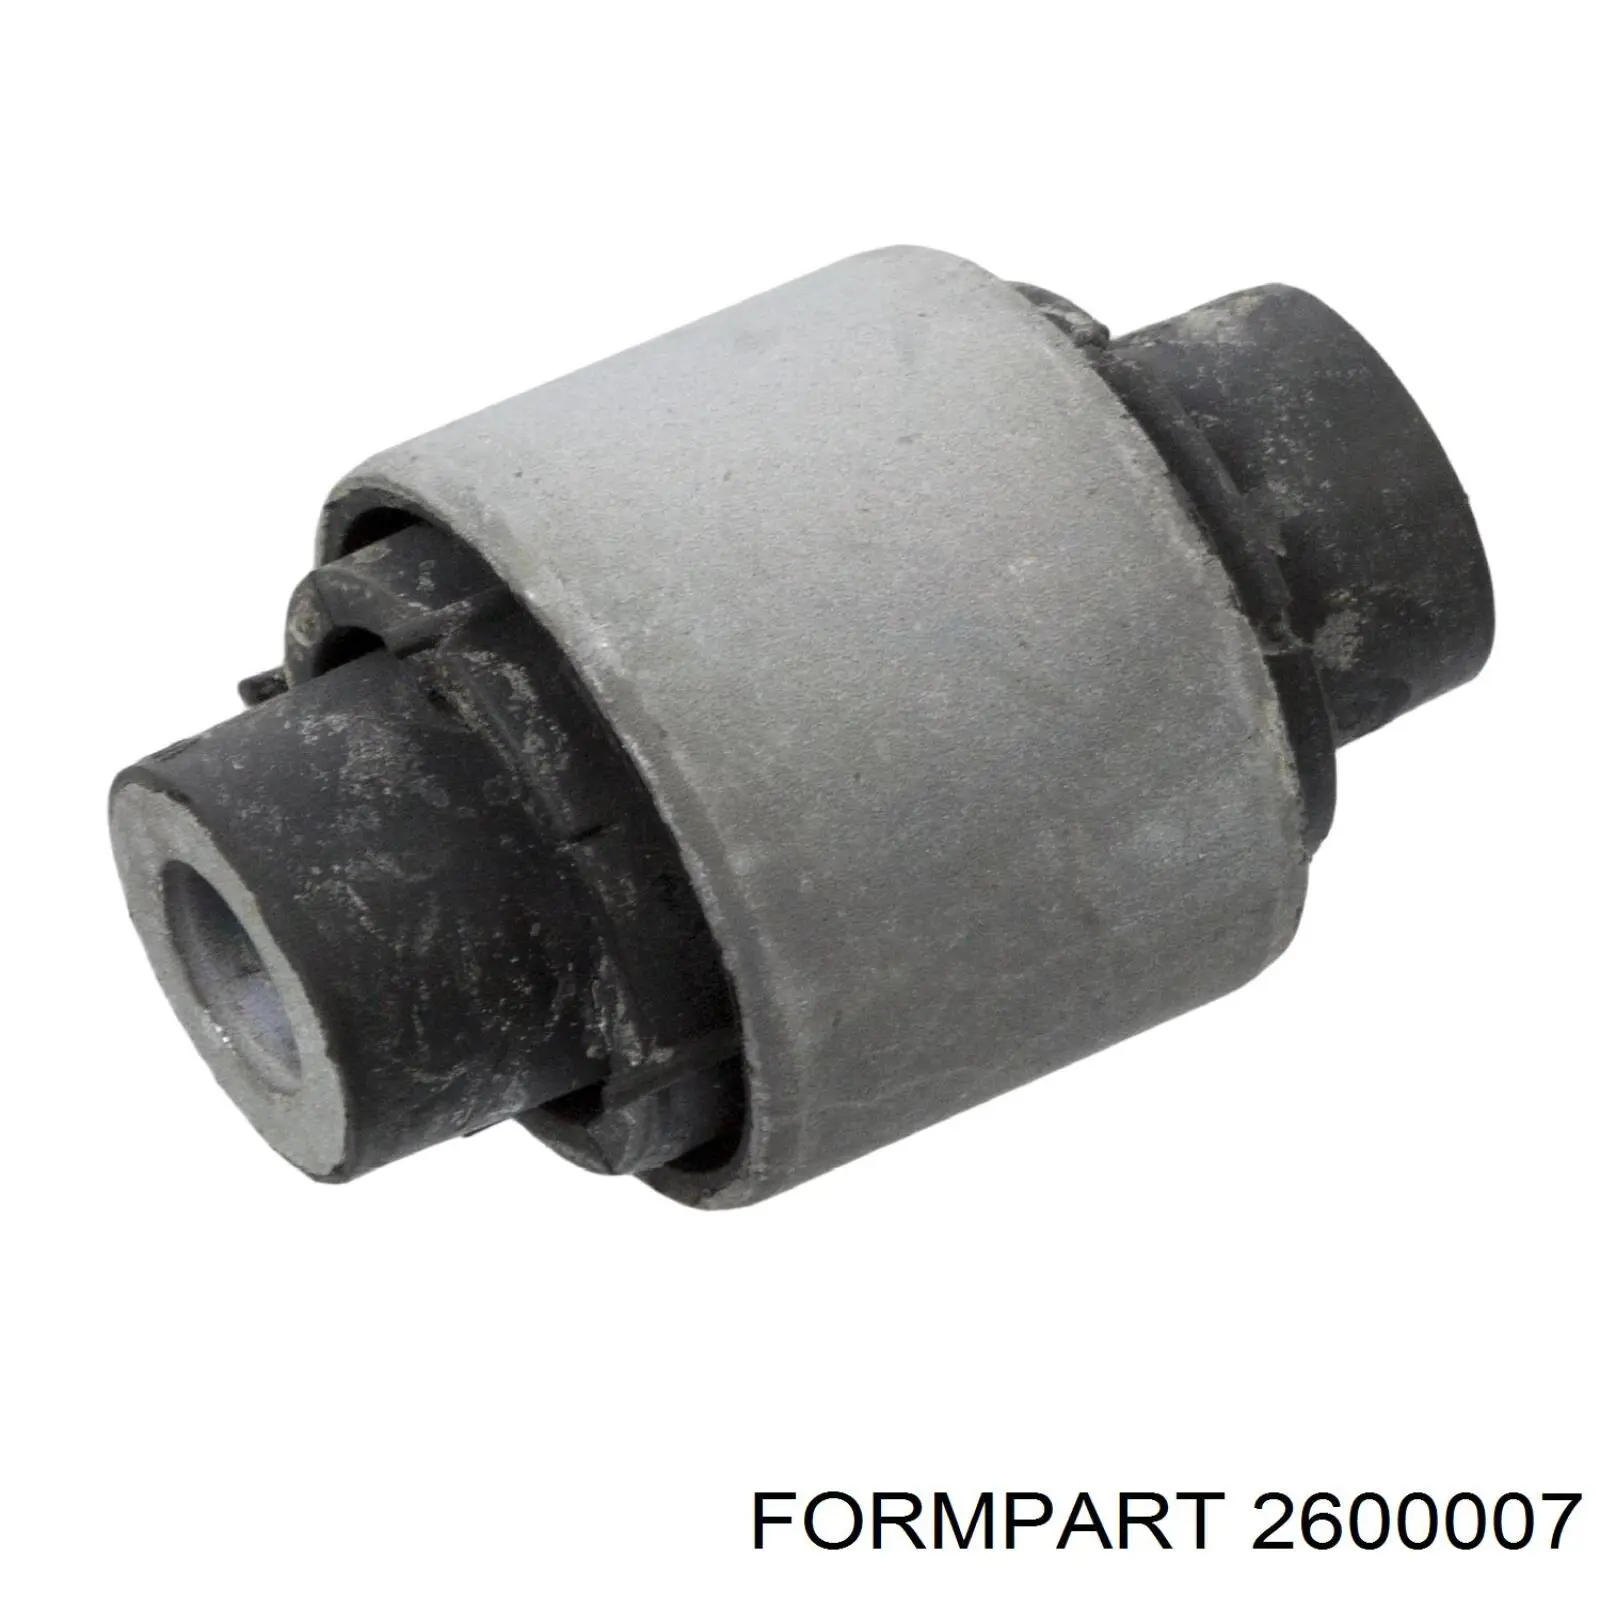 2600007 Formpart/Otoform silentblock de brazo de suspensión trasero superior